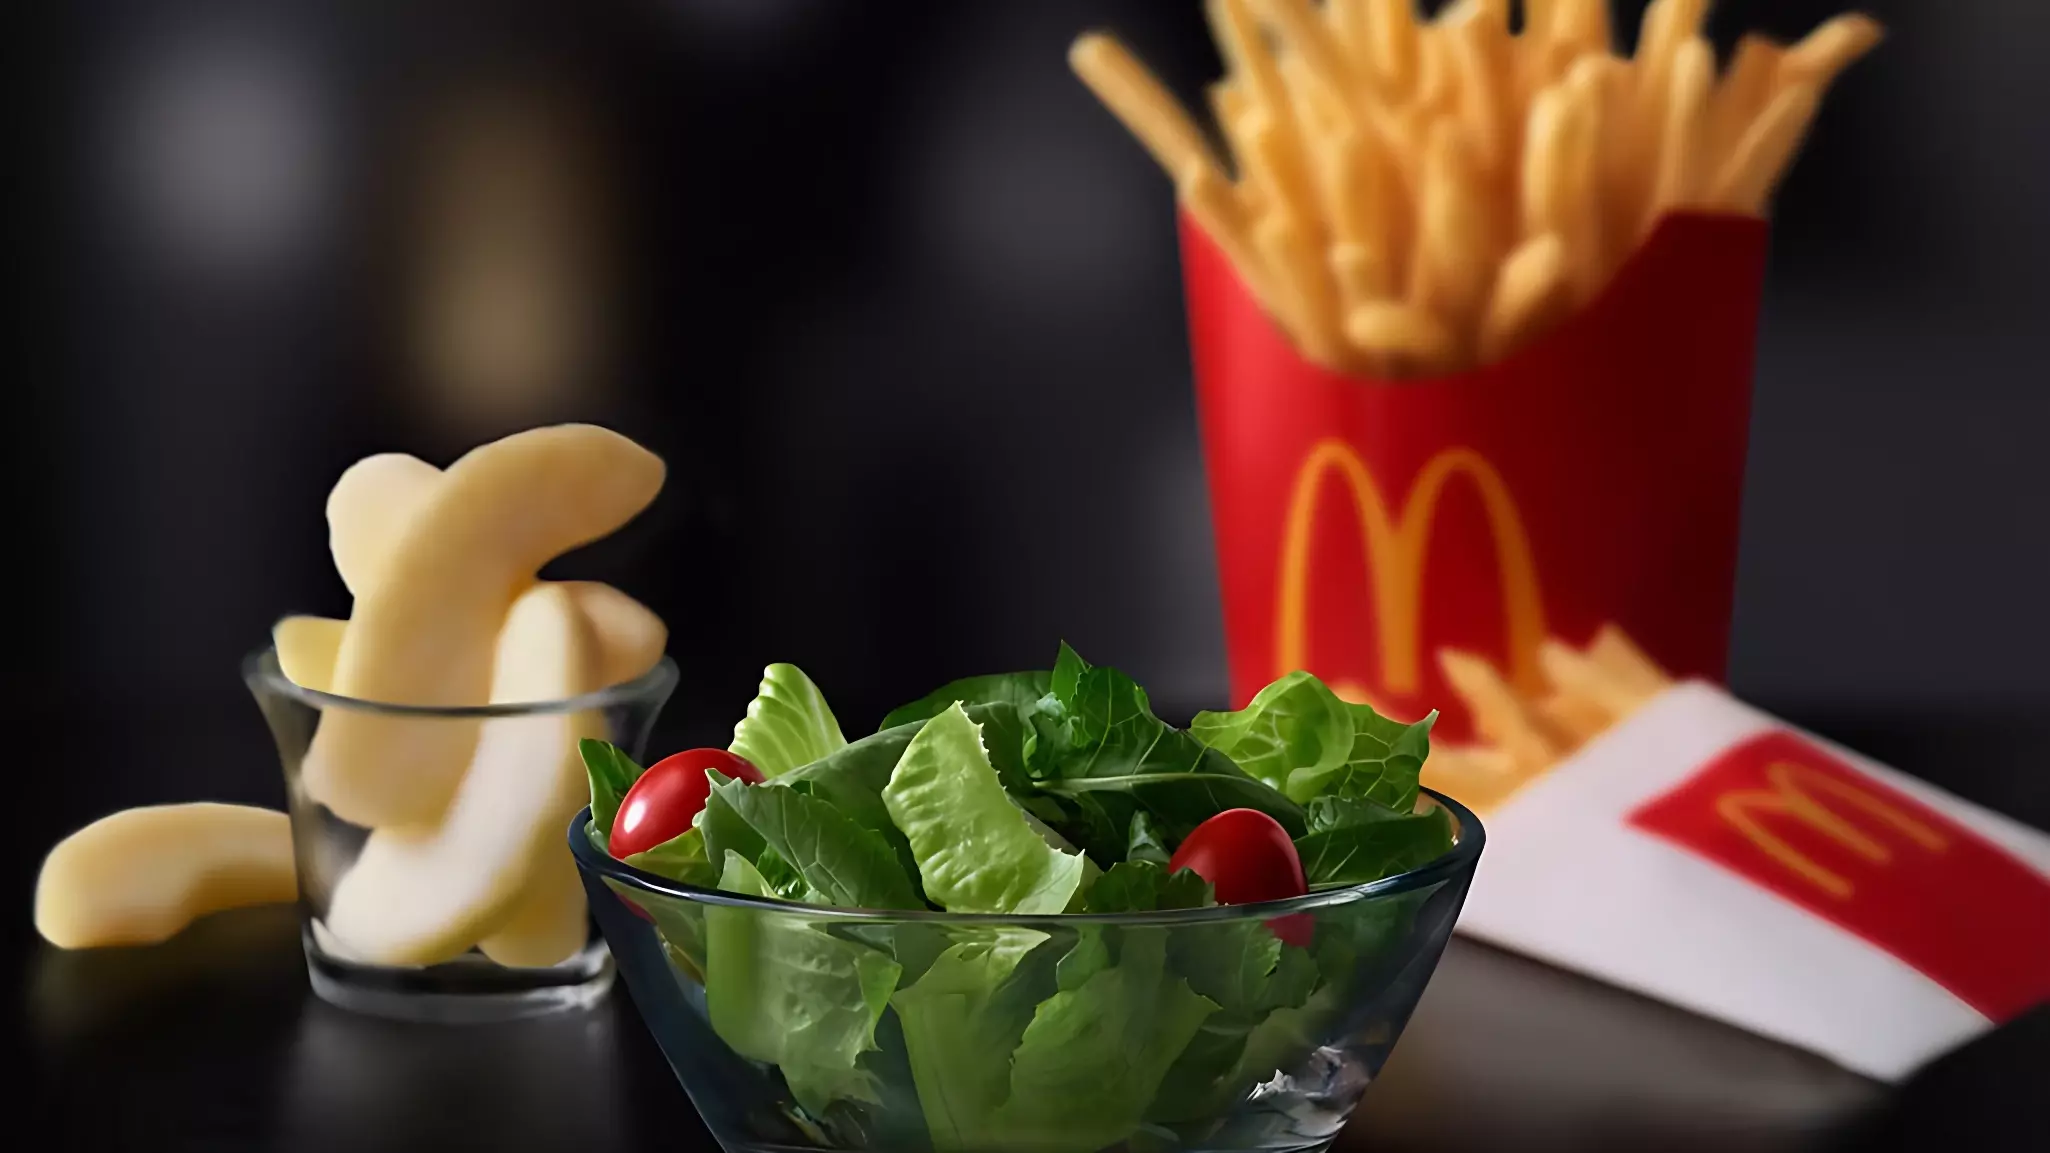 Акция McDonald's нашла отклик у посетителей дорогих ресторанов